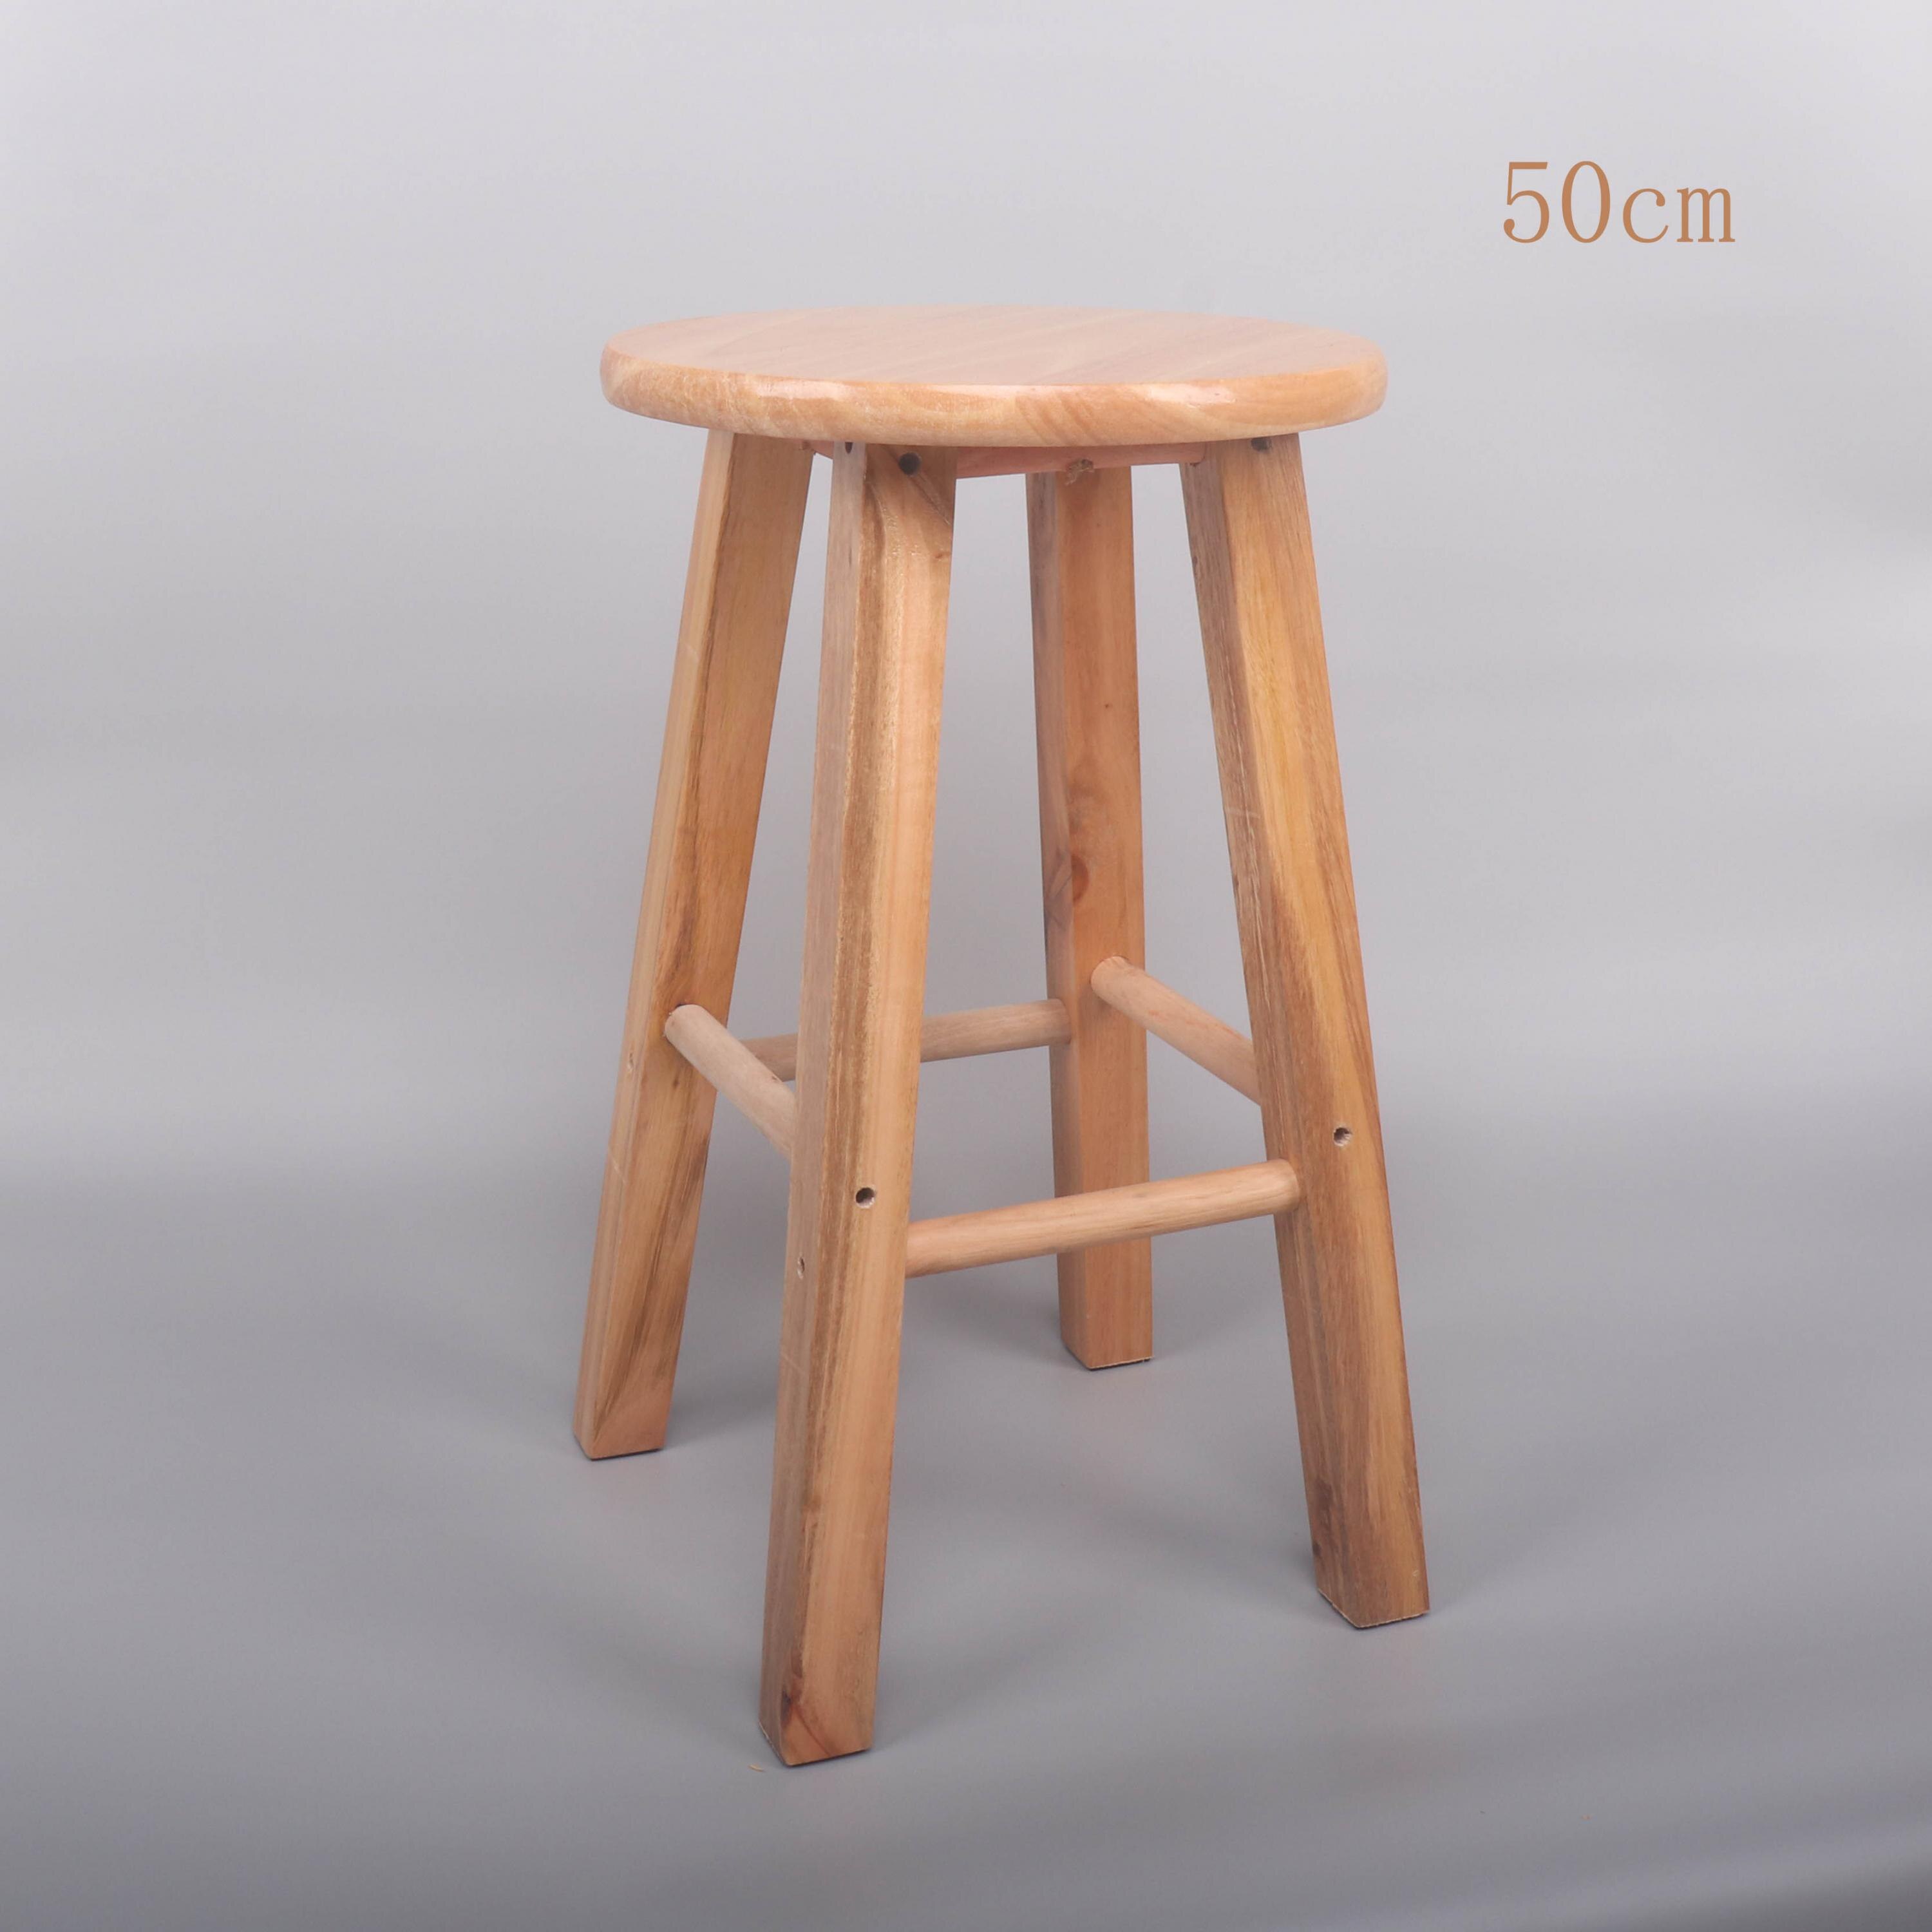 Massivt træ barstol høj bar stol høj skammel barstol gummi træ stige skammel høj bar stol: 5